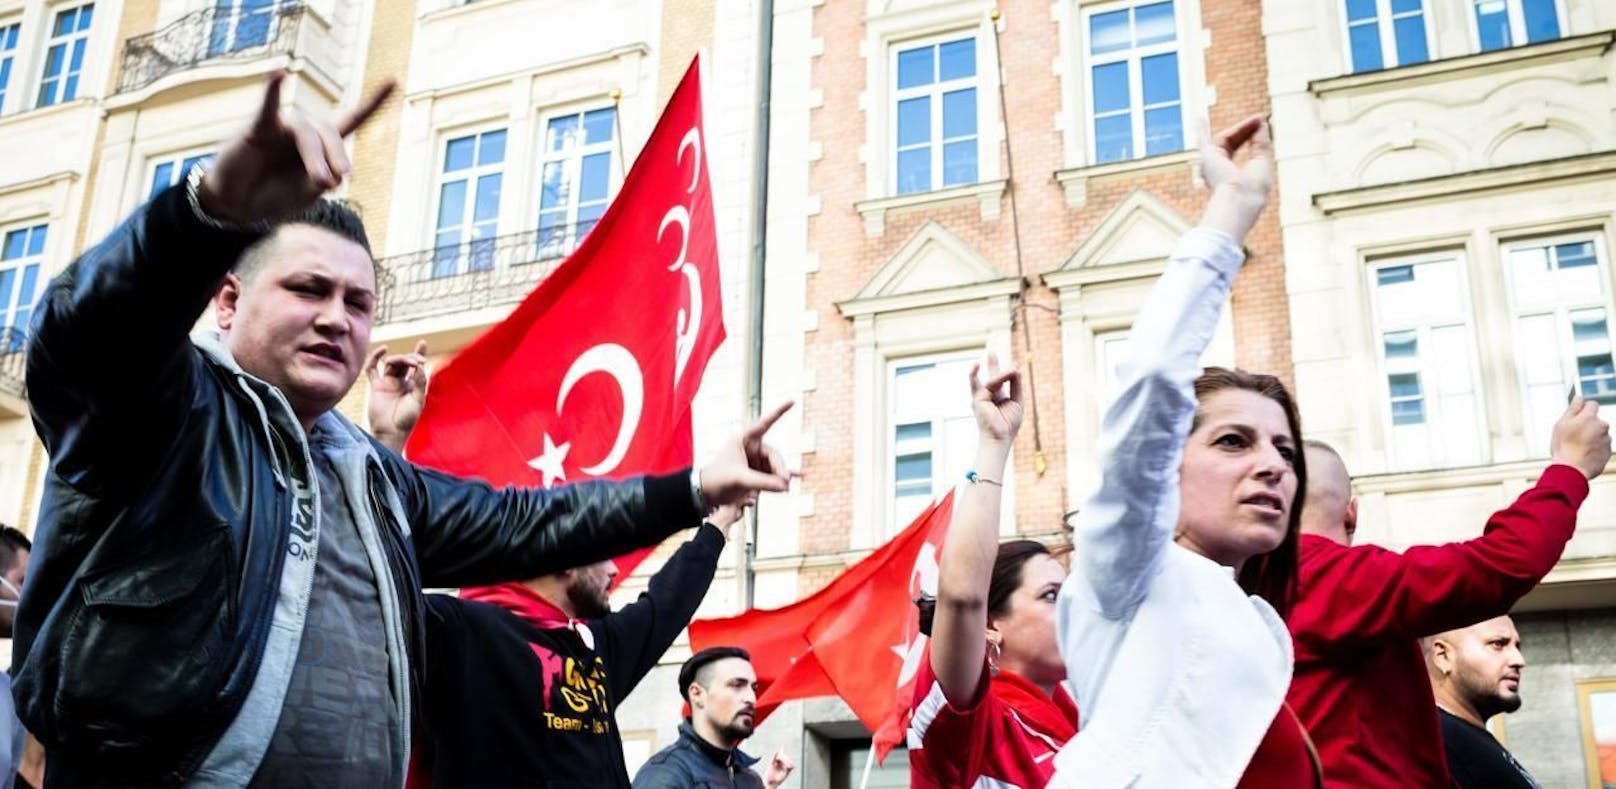 Aufmarsch von türkischen Nationalisten mit dem Wolfsgruß in München 2014.